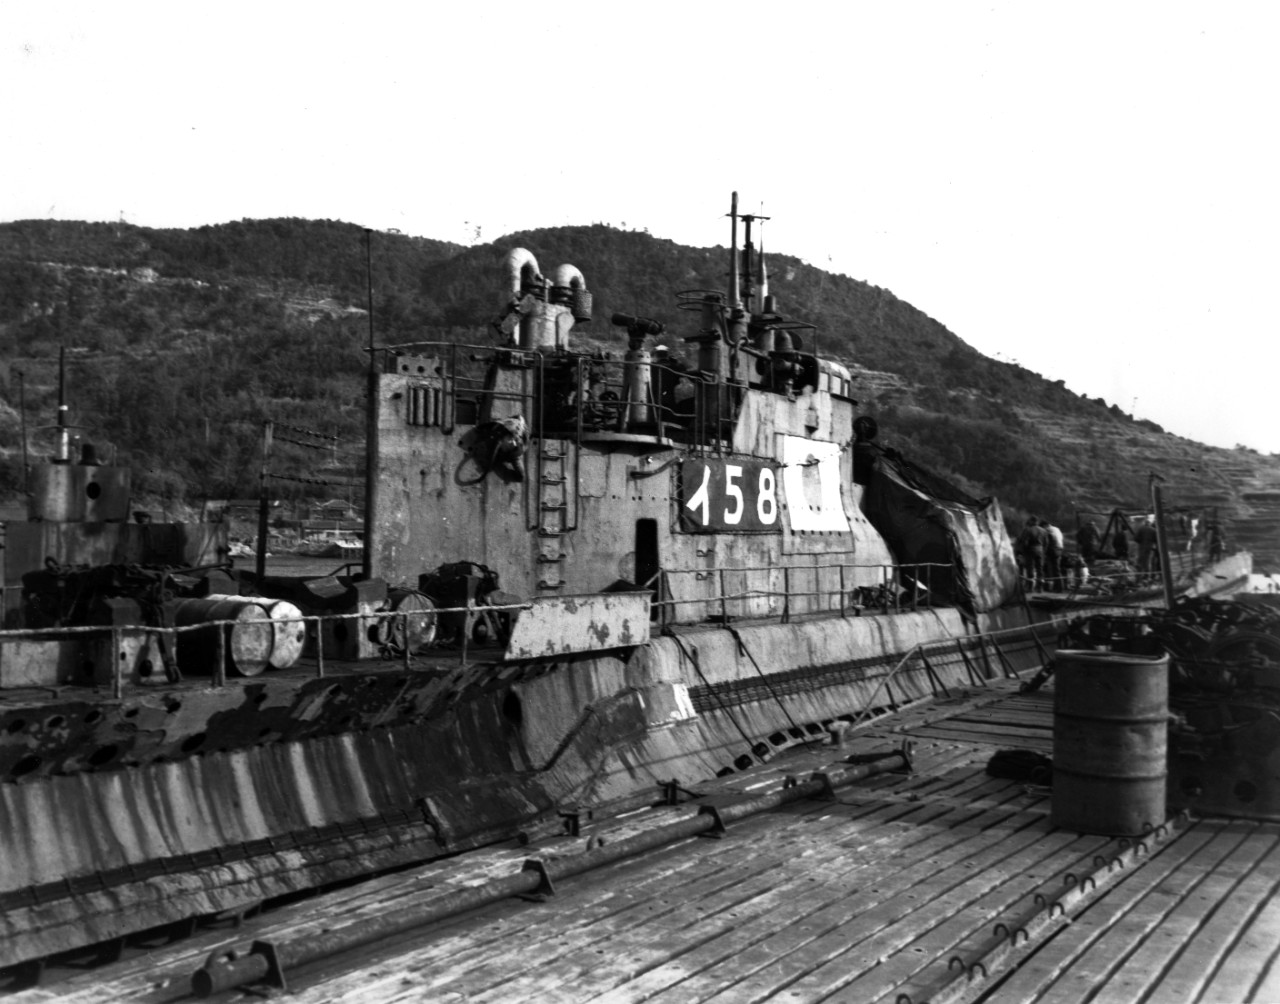 Photo #: USMC 139990  I-58 (Japanese Submarine, 1944-1946)